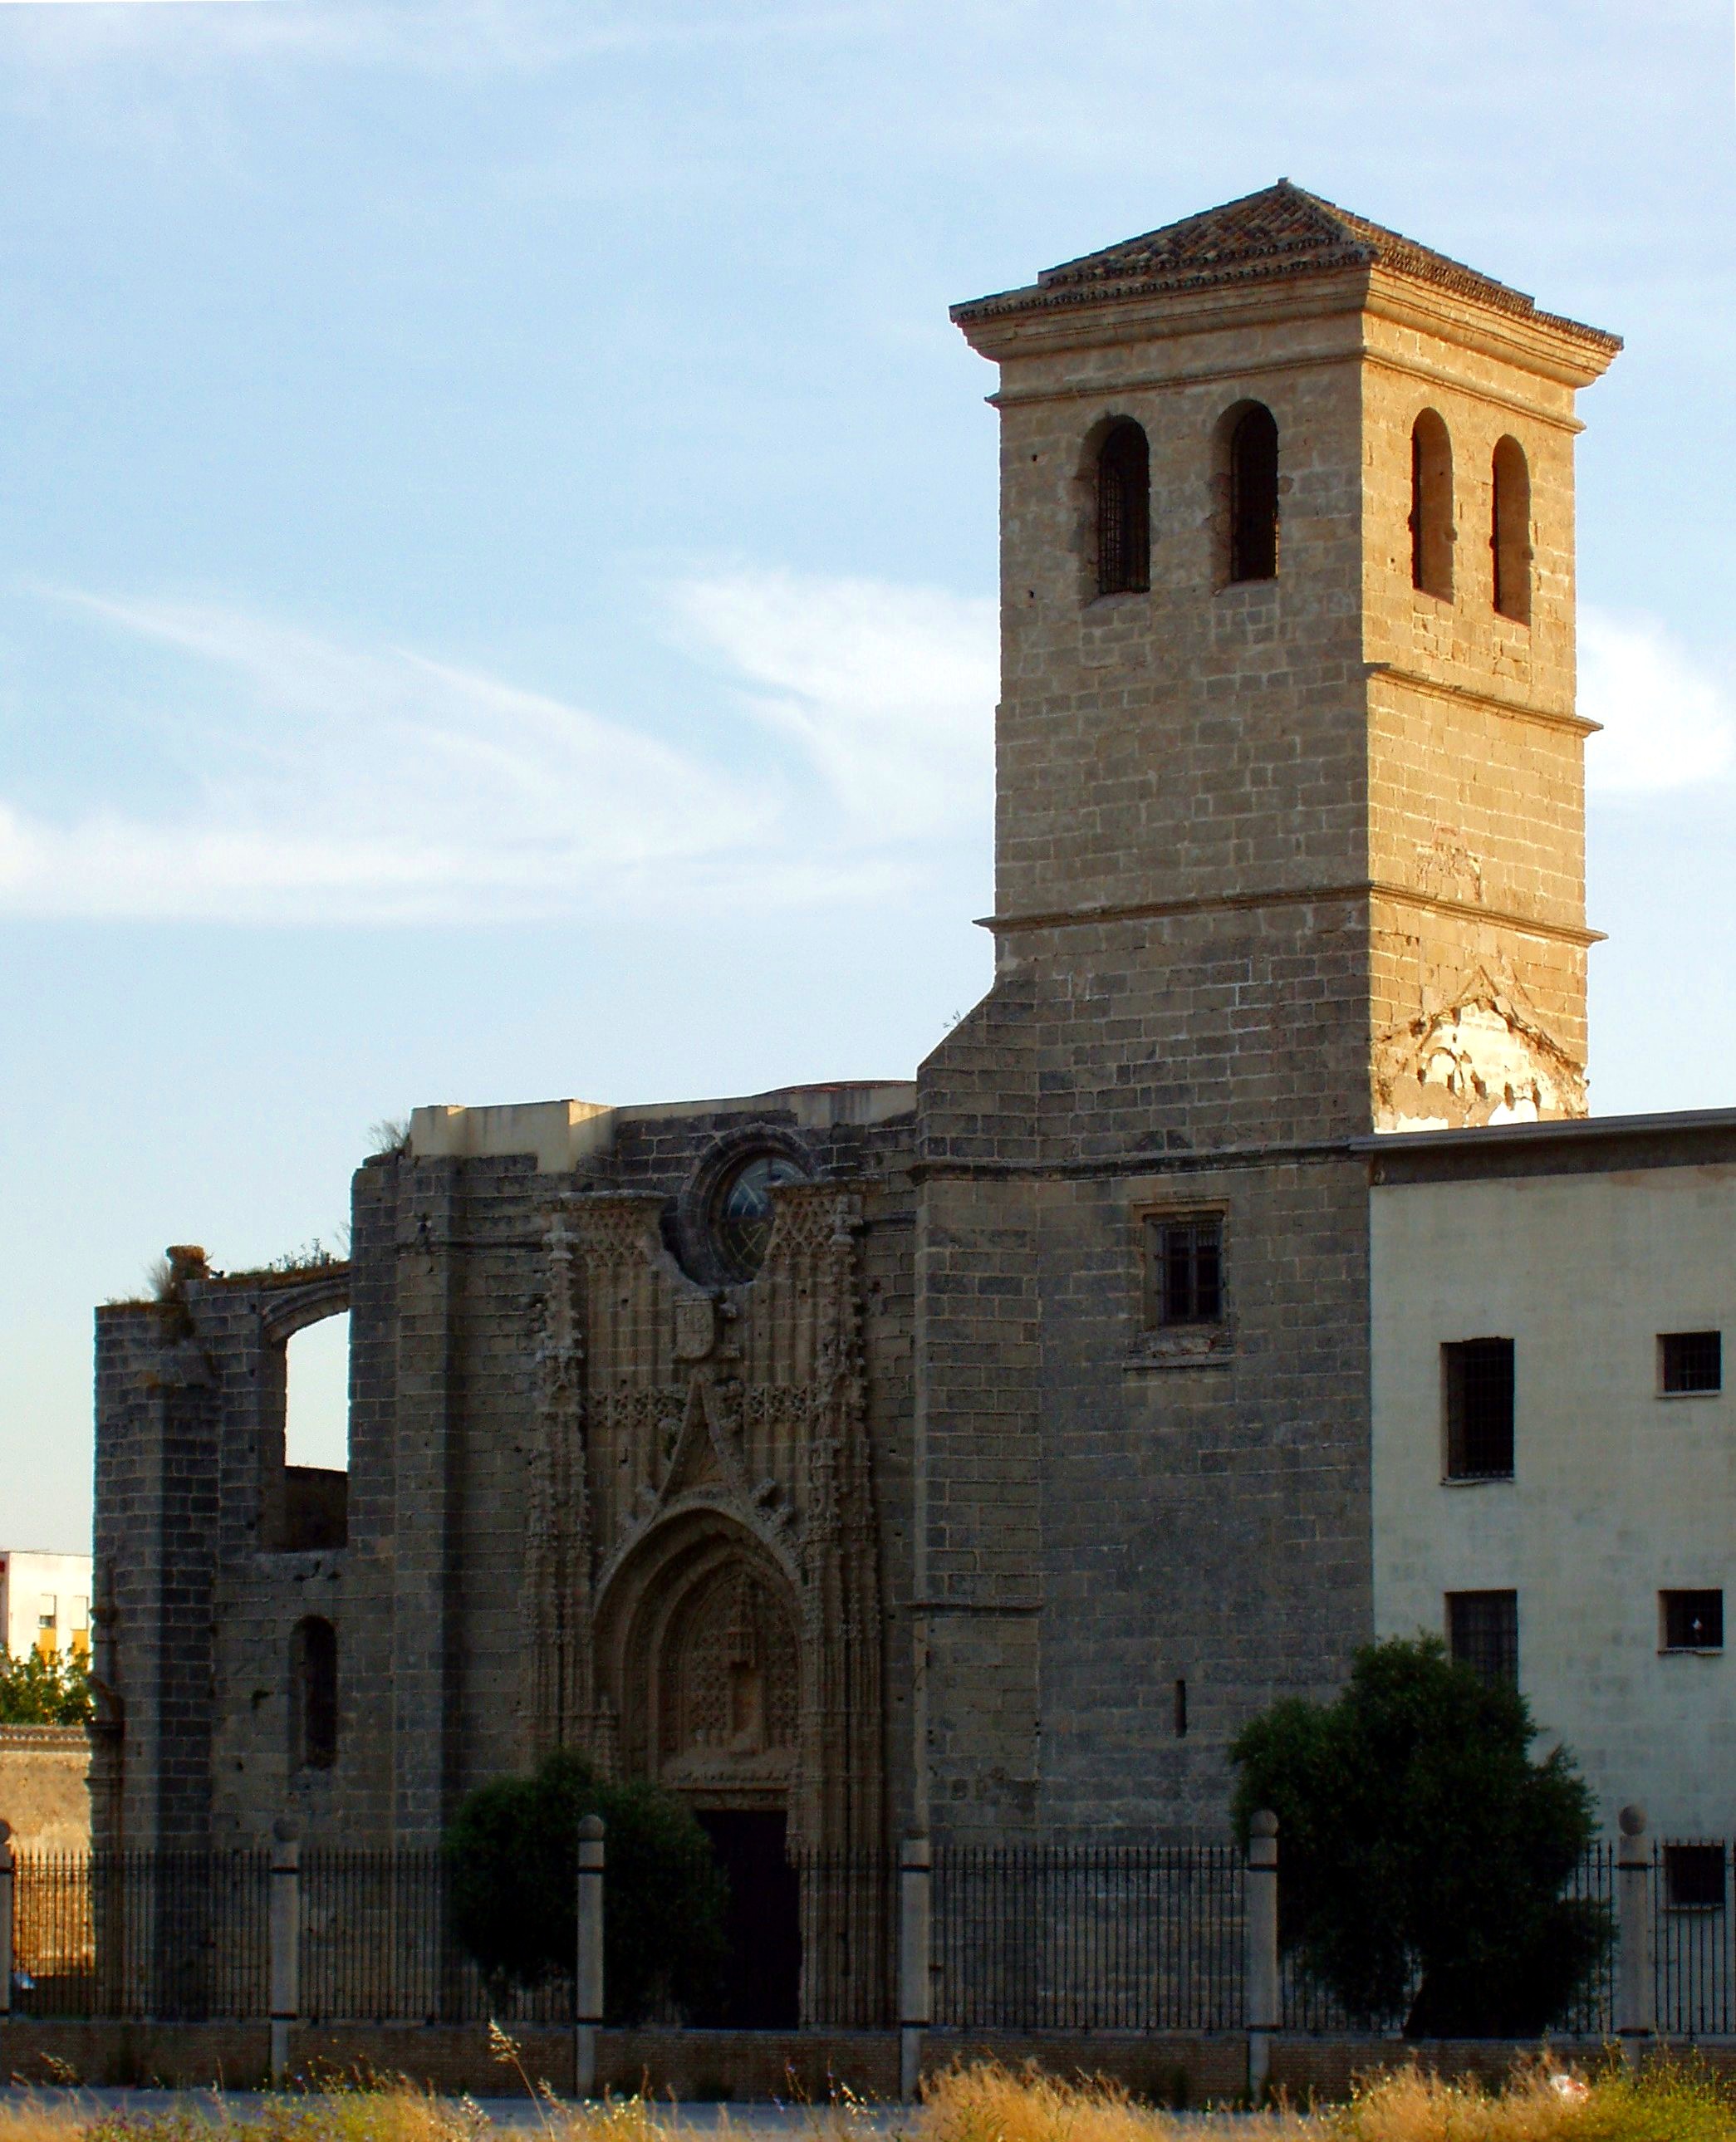 Monasterio de la Victoria, Province of Cadiz - Wikipedia